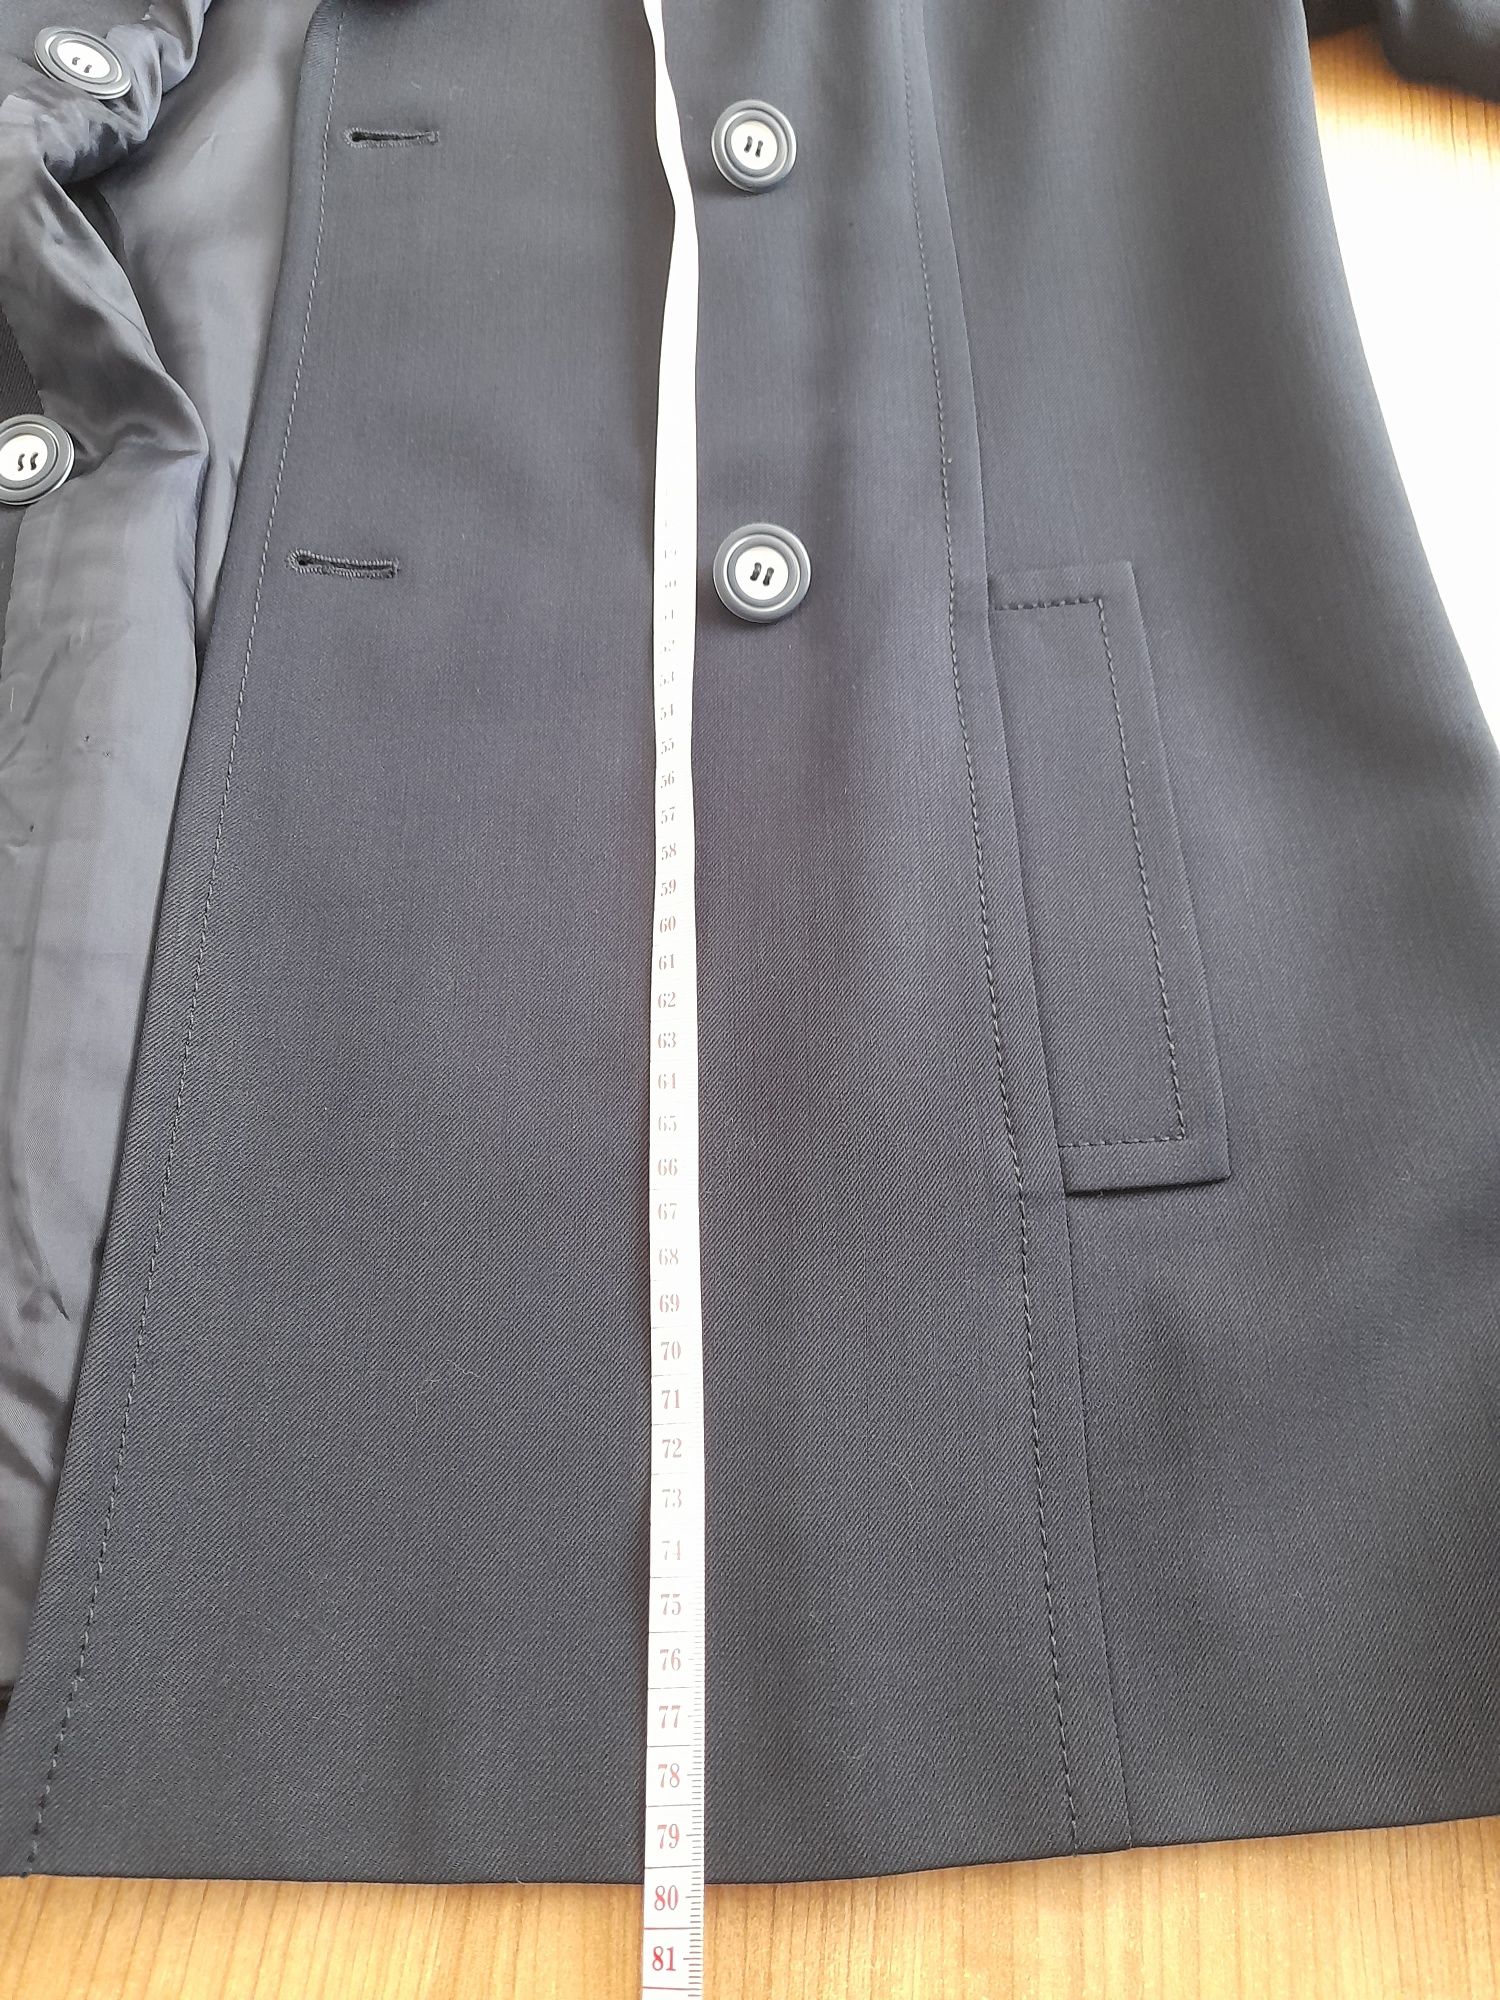 Дамско сако, Gant, сако Marly's 100 % вълна,, размер XL